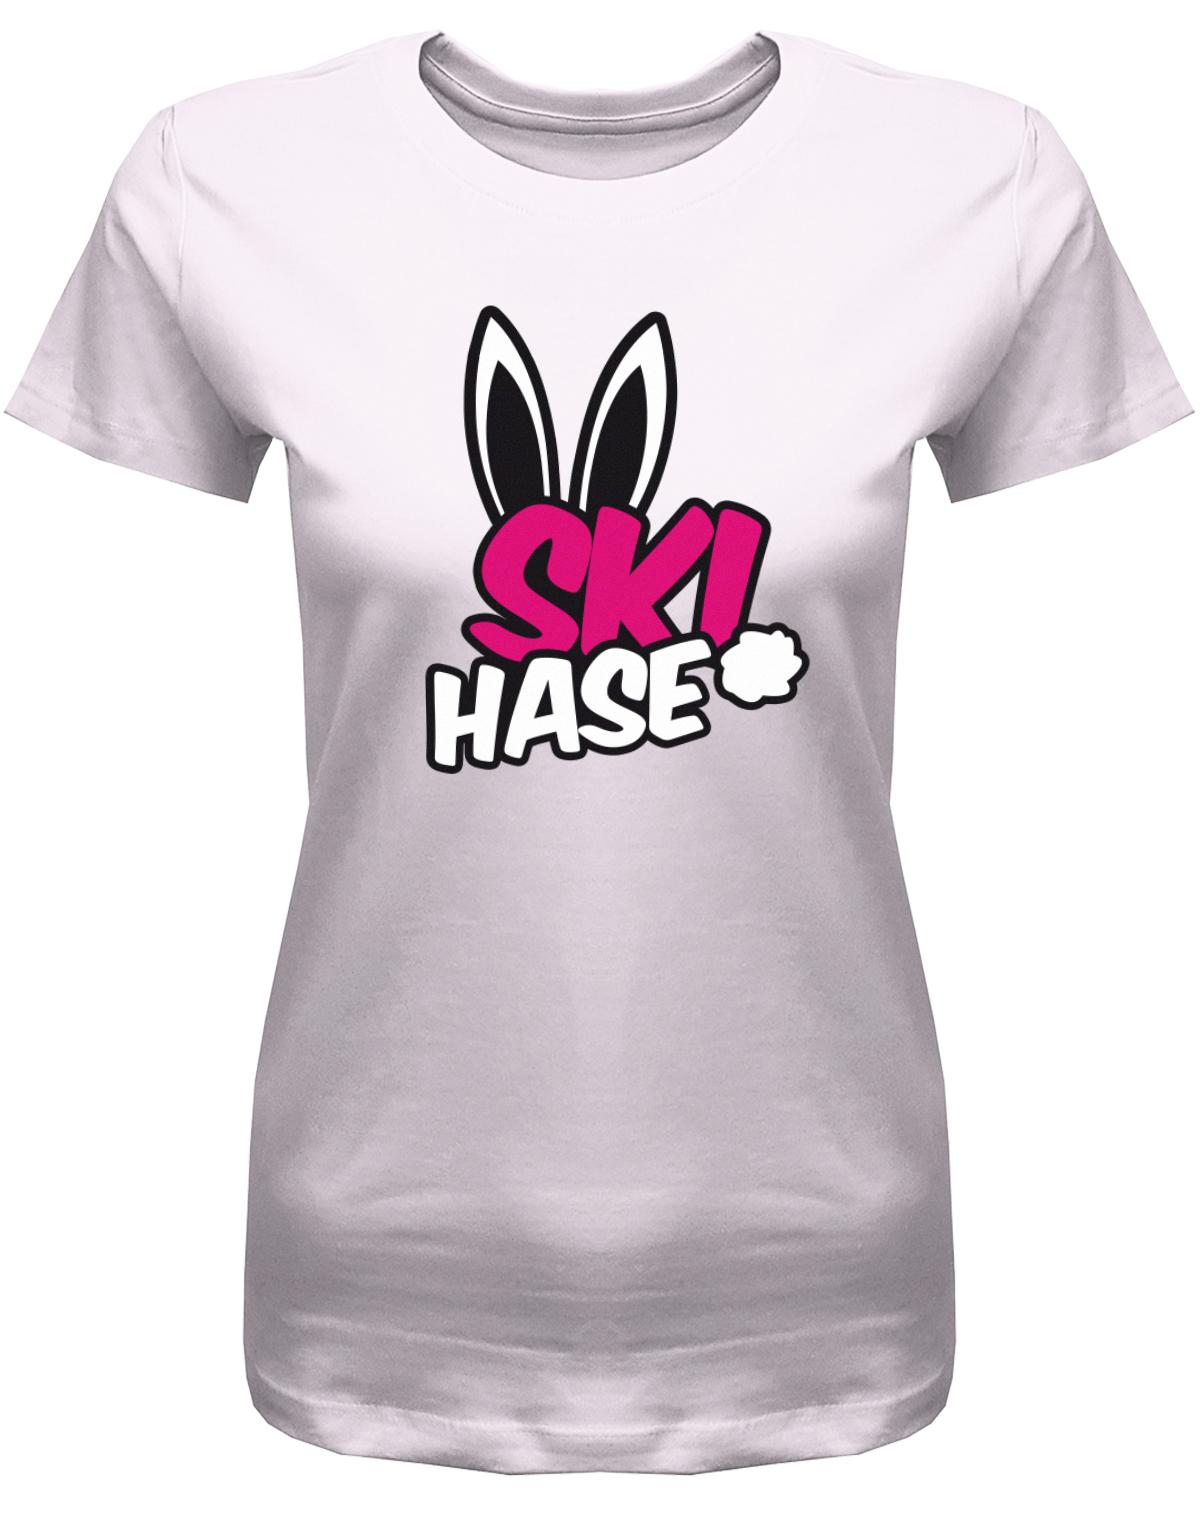 Apres-Ski-Ski-Hase-Damen-Shirt-rosa